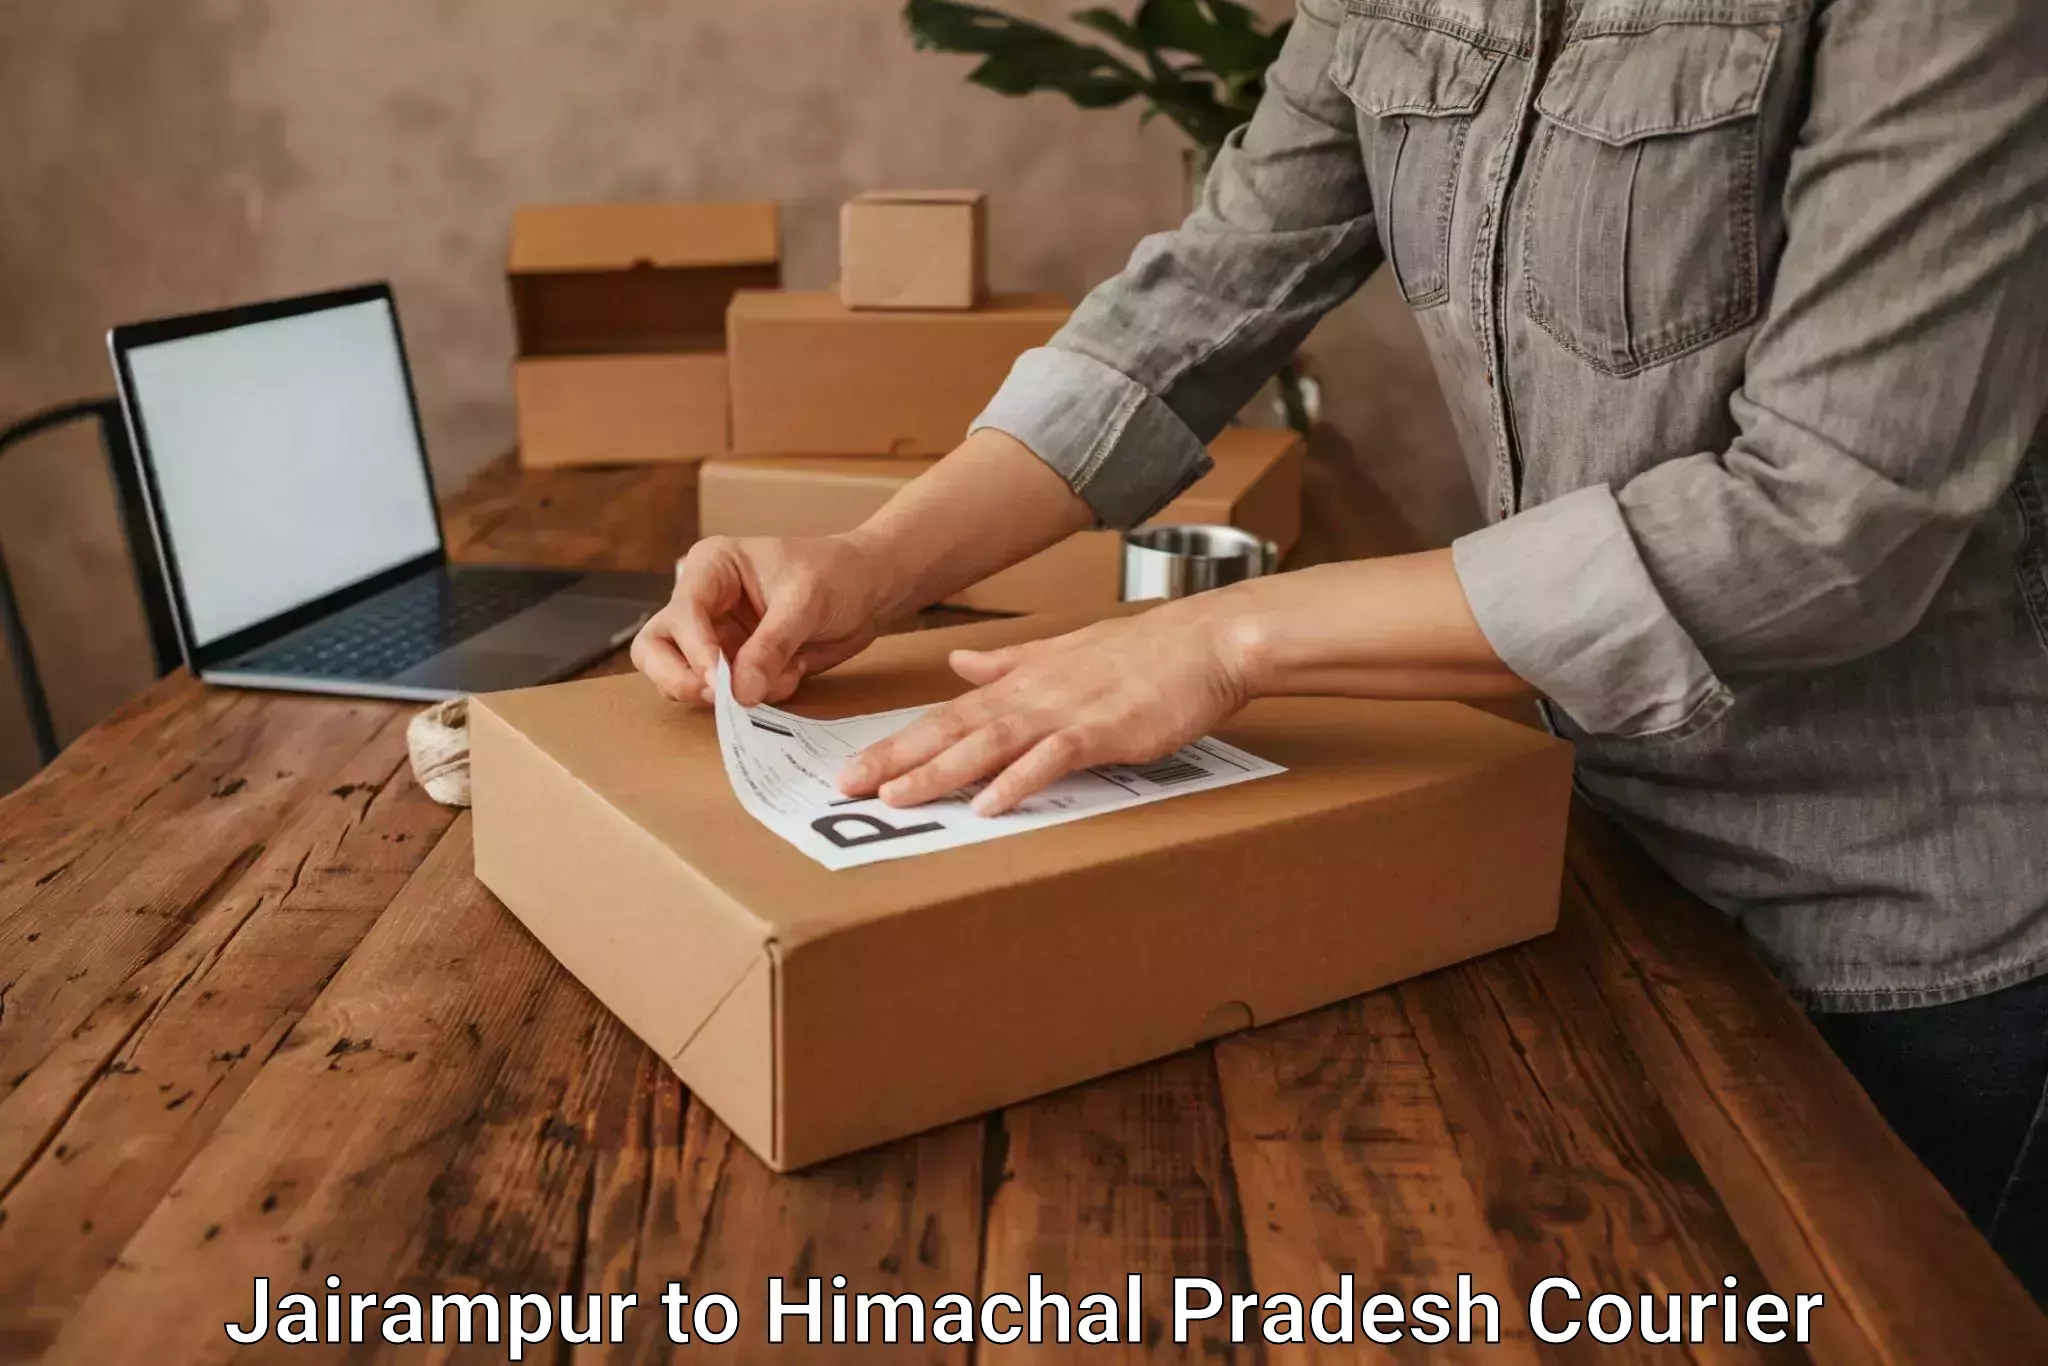 Shipping and handling in Jairampur to Bilaspur Himachal Pradesh